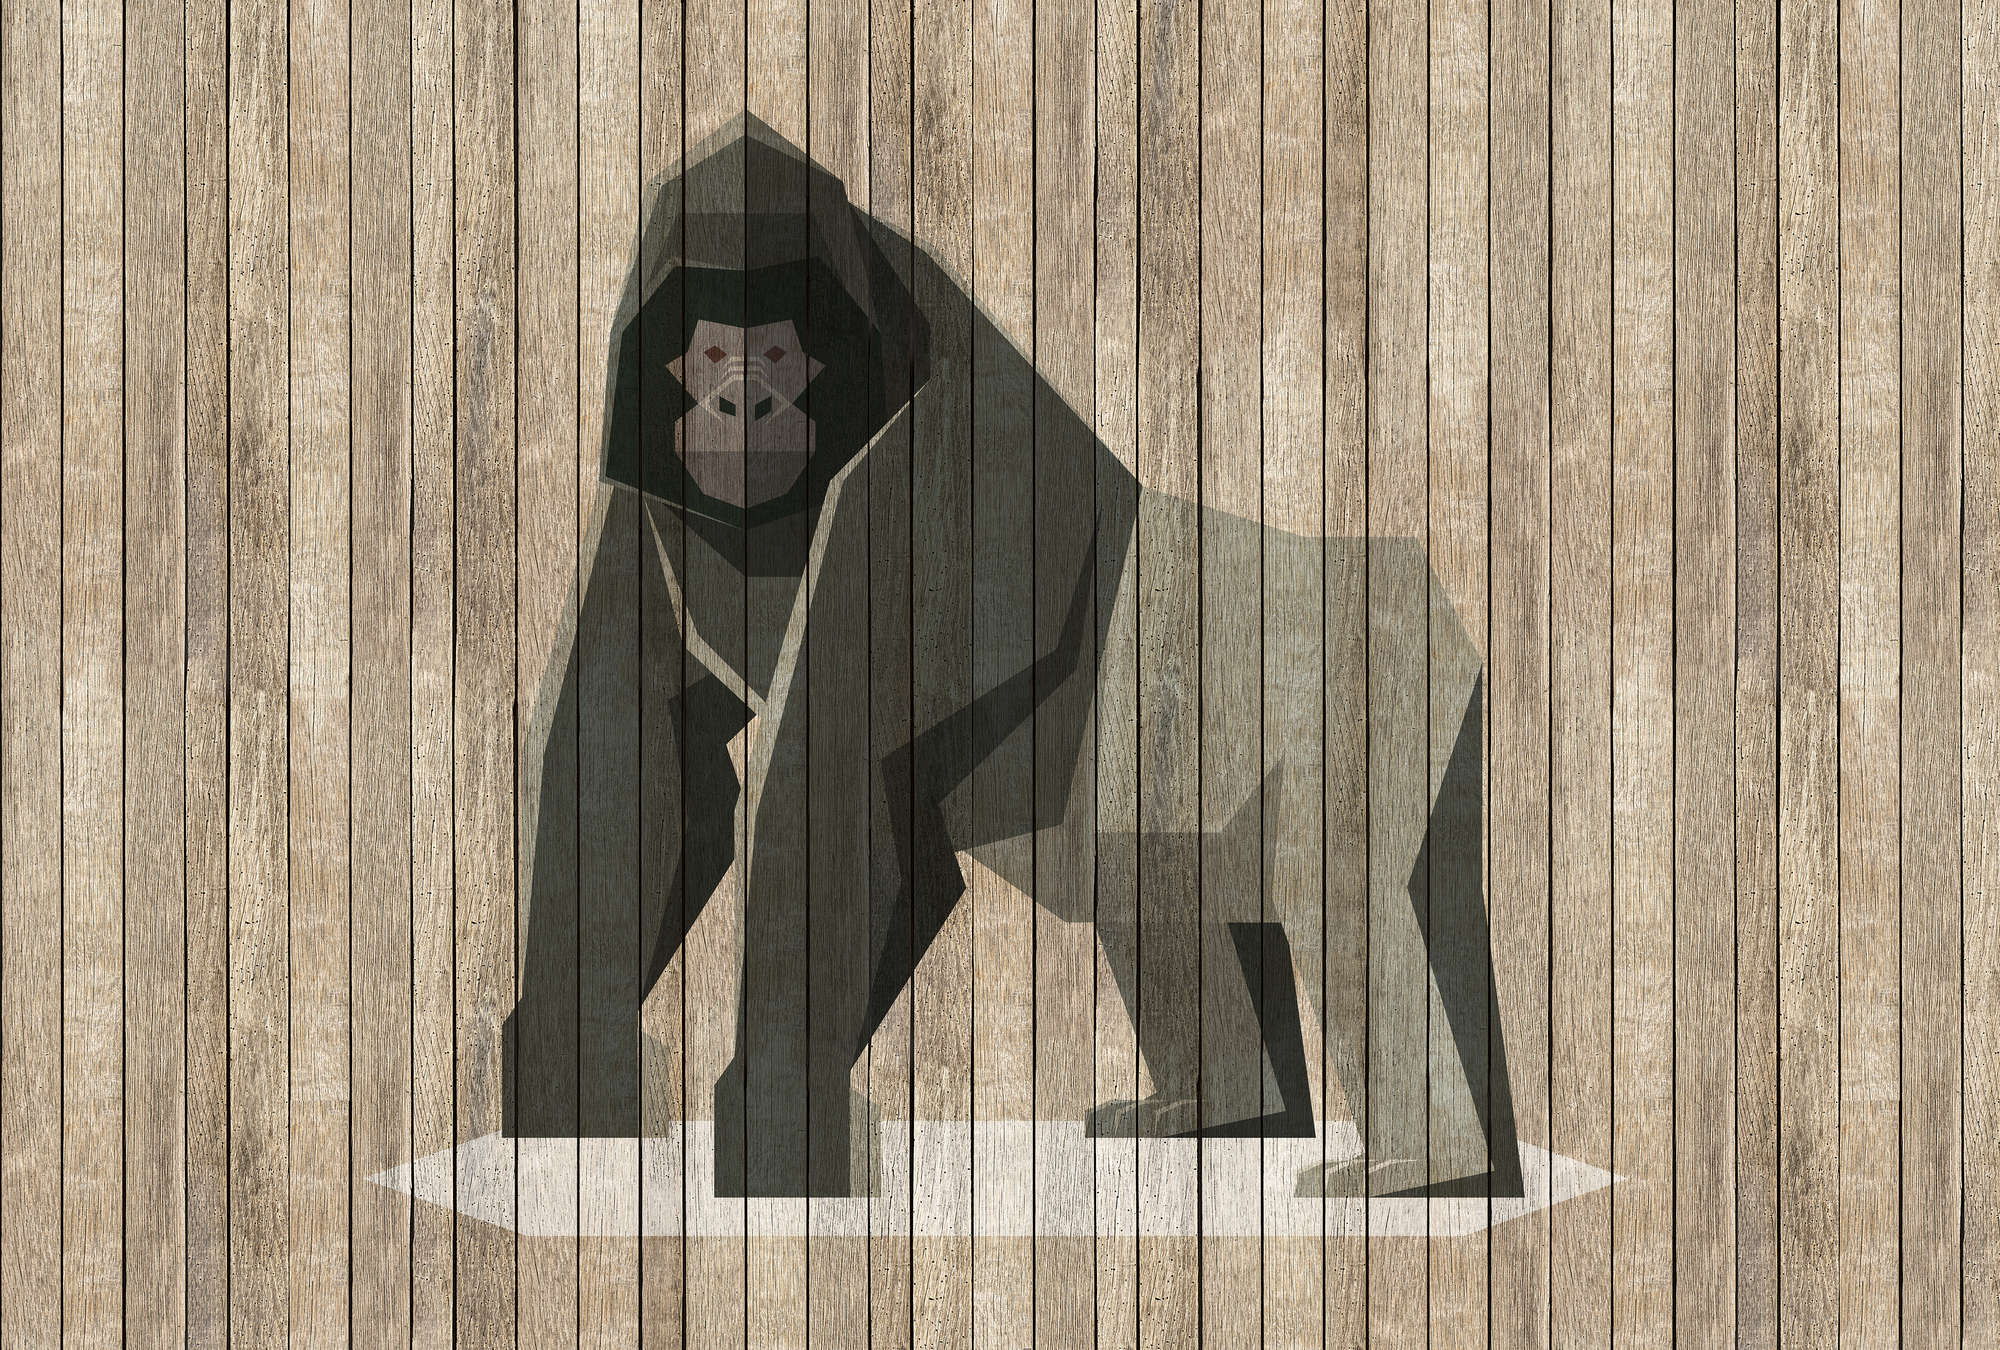             Nacido para ser salvaje 3 - Mural Gorila sobre tabla - Paneles de madera de ancho - Beige, Marrón | Tejido no tejido texturizado
        